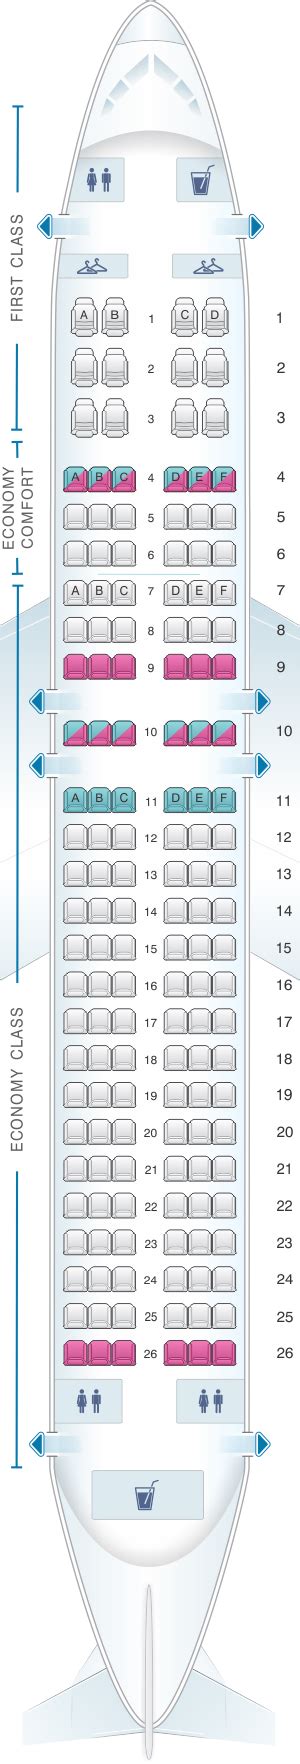 Plan De Cabine Delta Airlines Airbus A320 200 32032r Seatmaestrofr